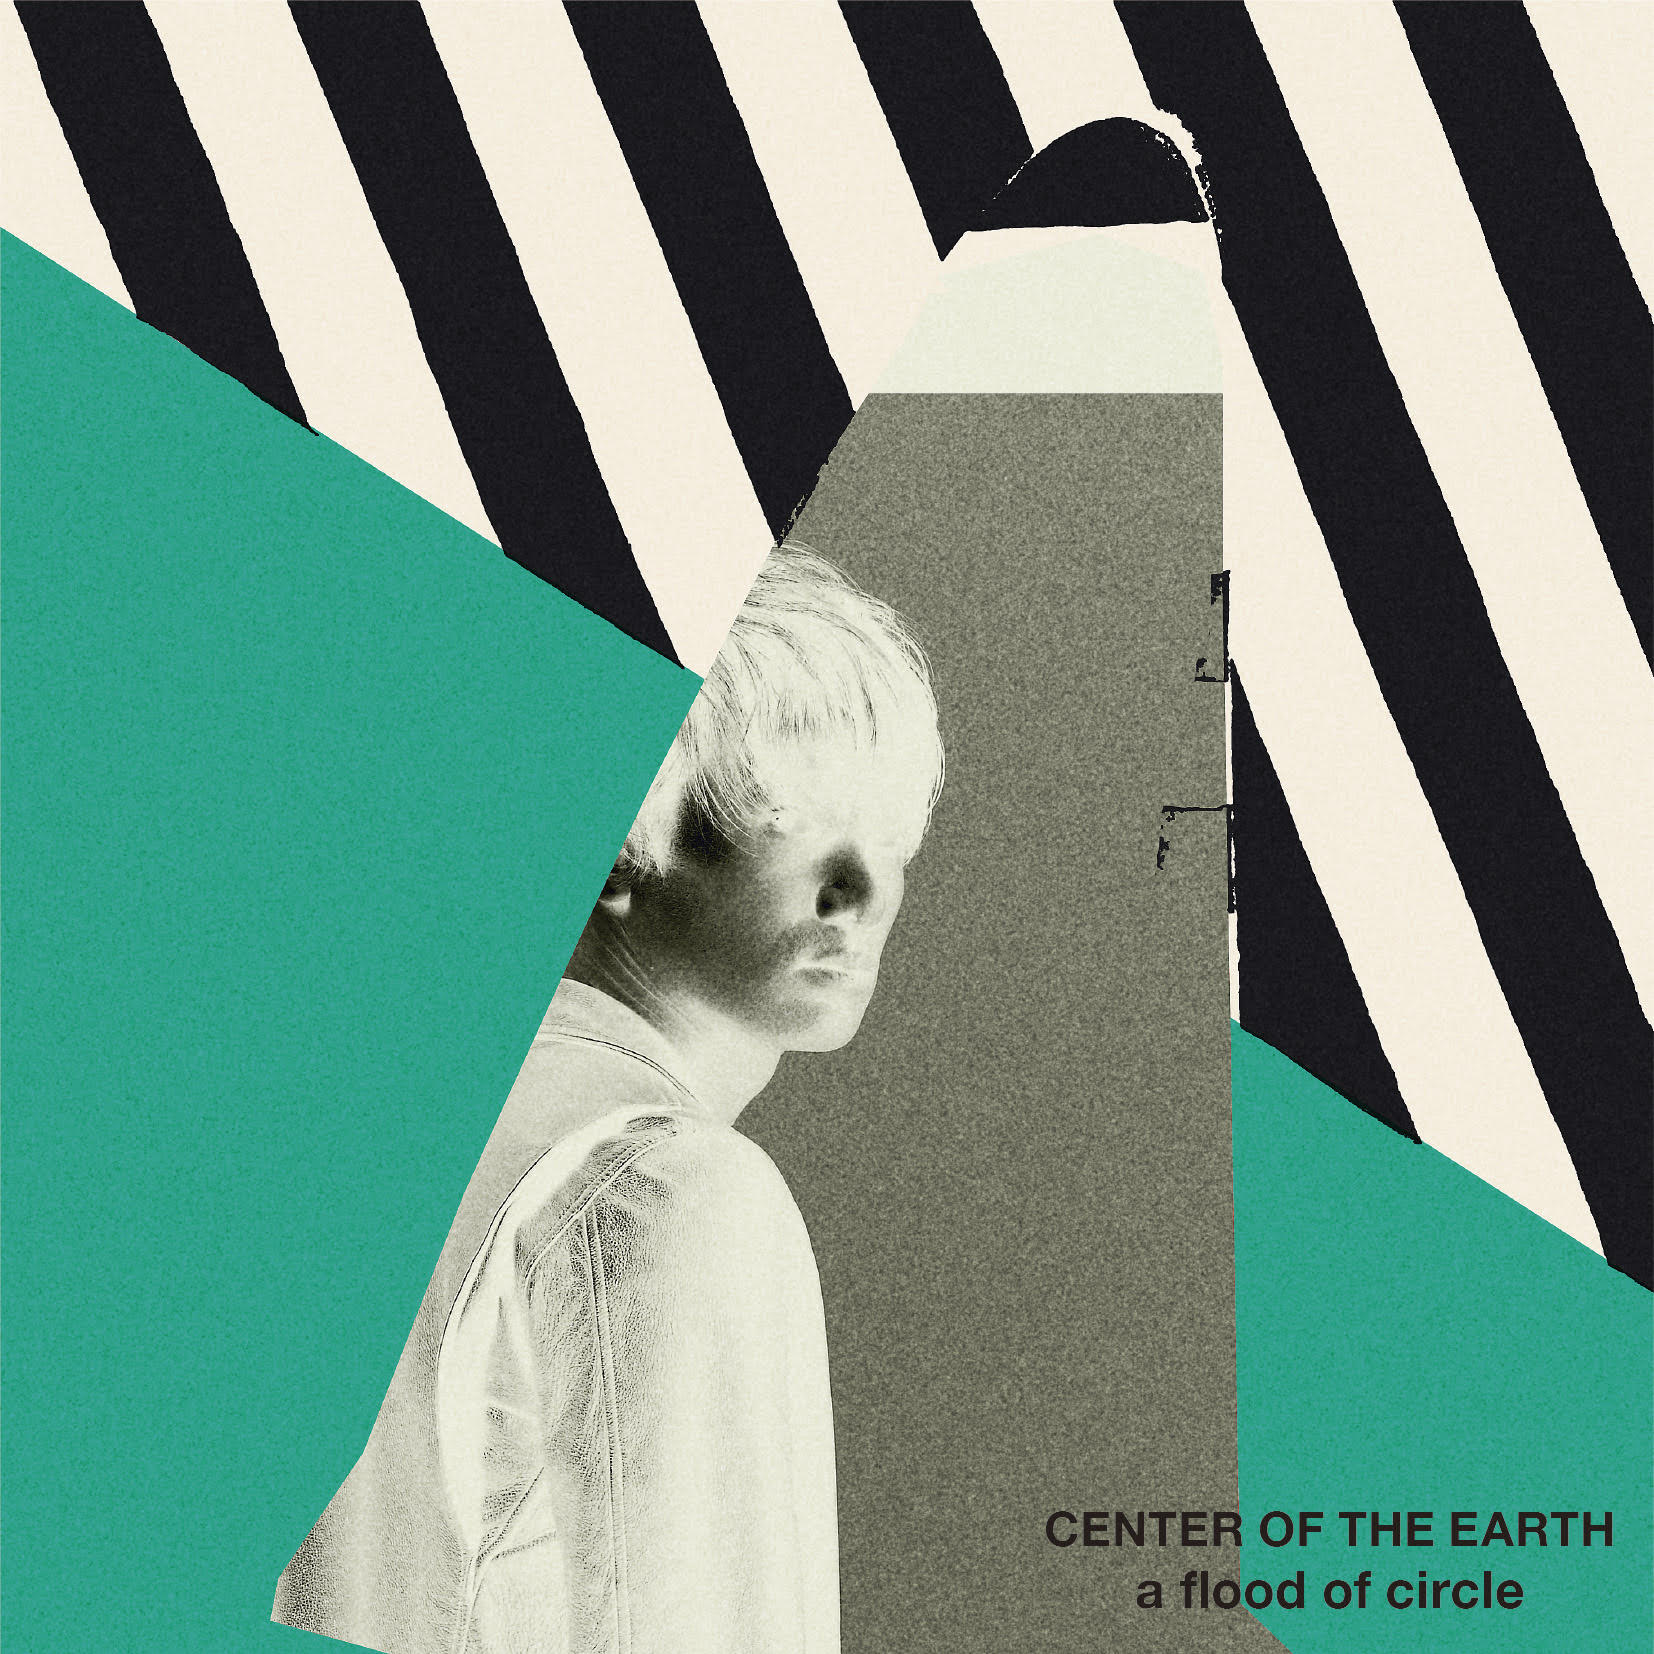 A Flood Of Circleニューアルバム Center Of The Earth 3 20発売 初回盤はvo佐々木とgtアオキによるユニット サテツ のシングル付き 株式会社テイチクエンタテインメントのプレスリリース